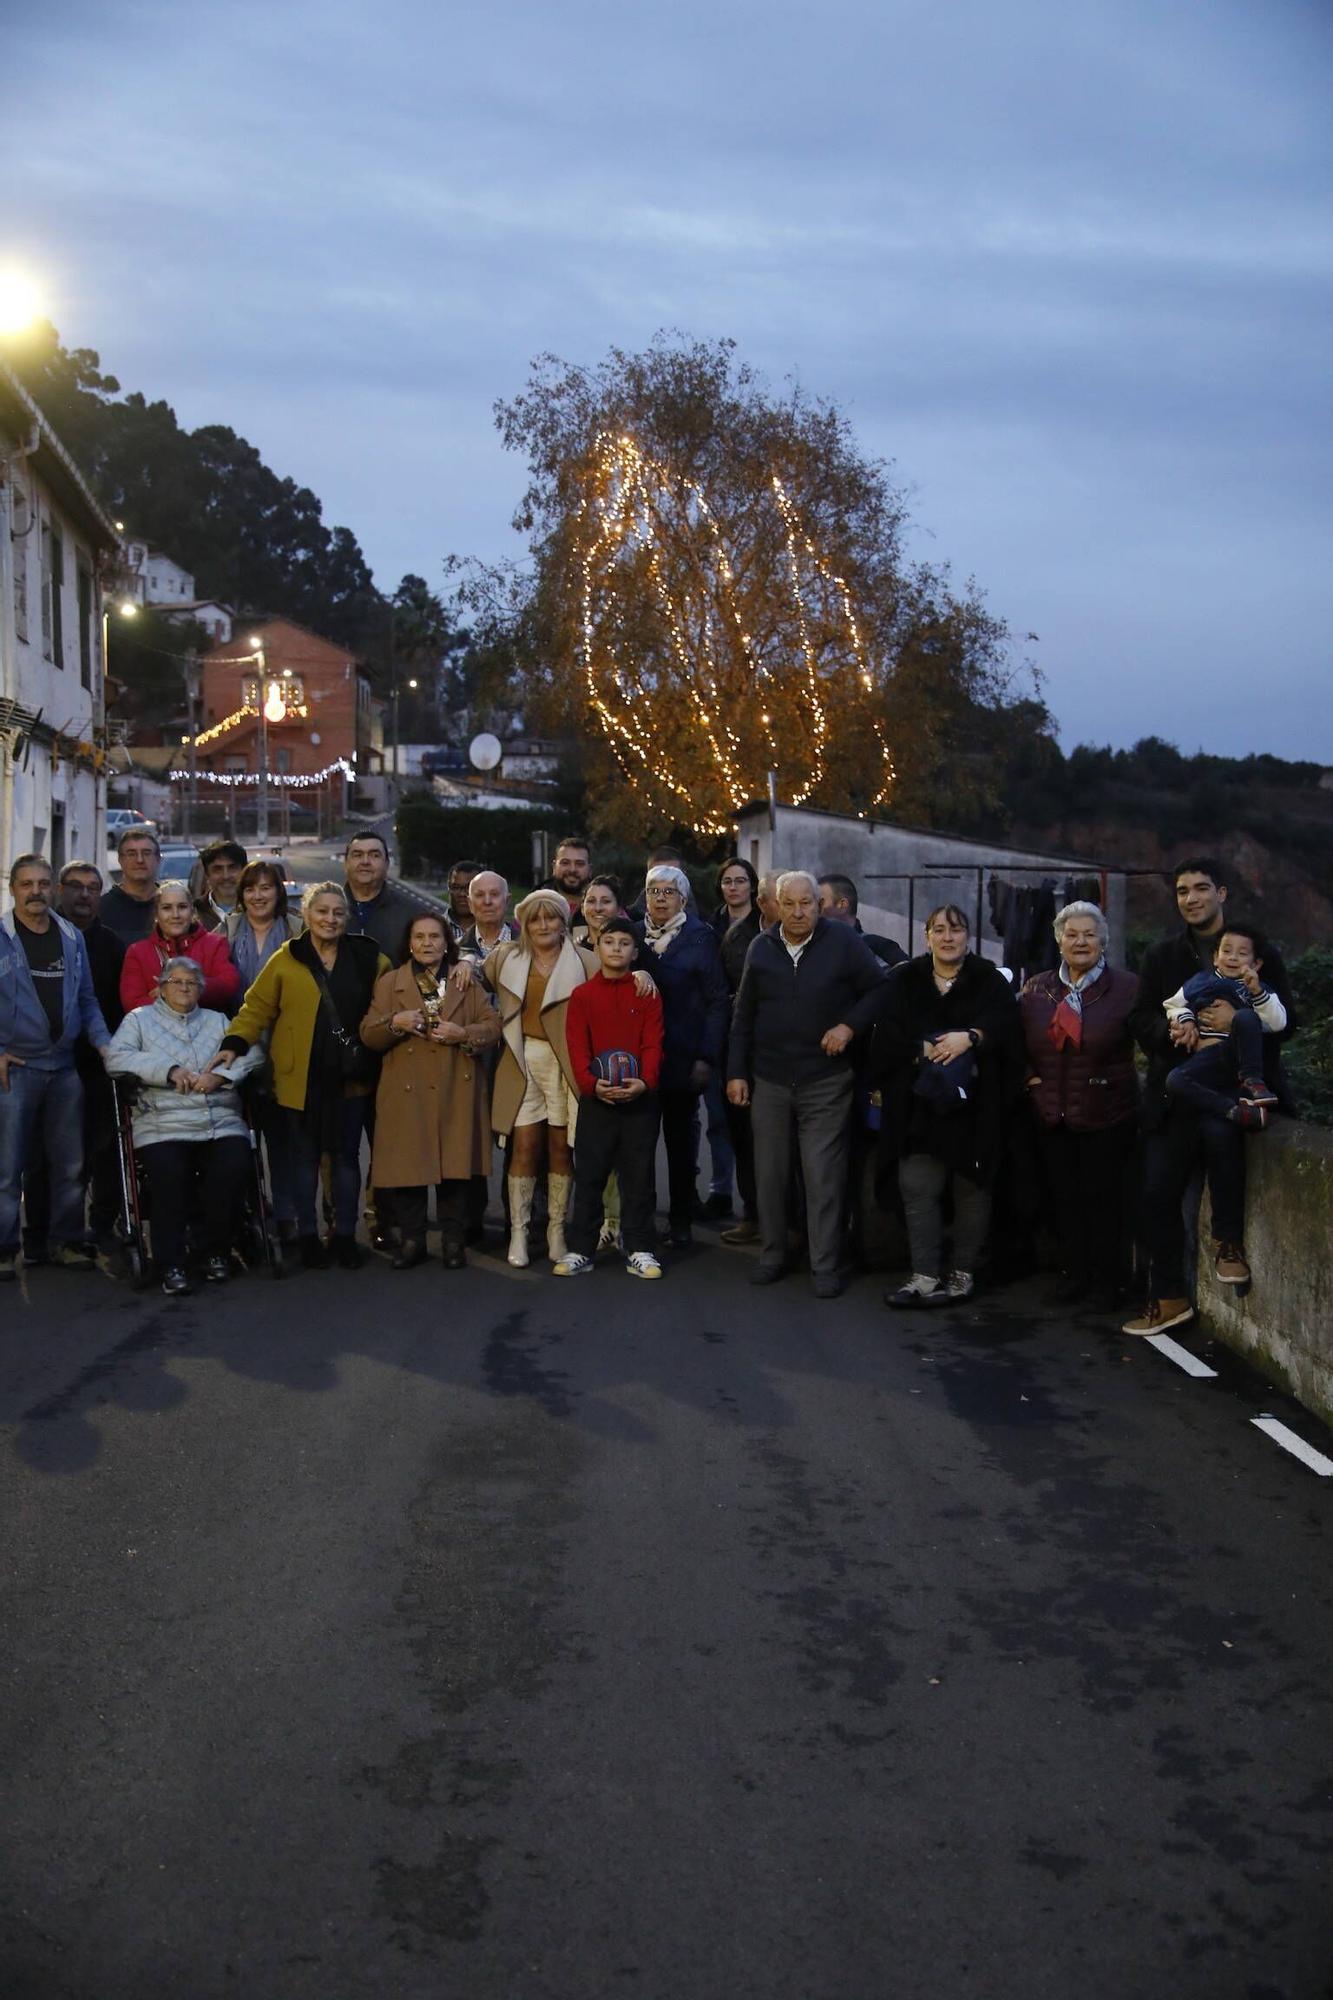 El espíritu navideño de los vecinos ilumina los barrios de Gijón (en imágenes)